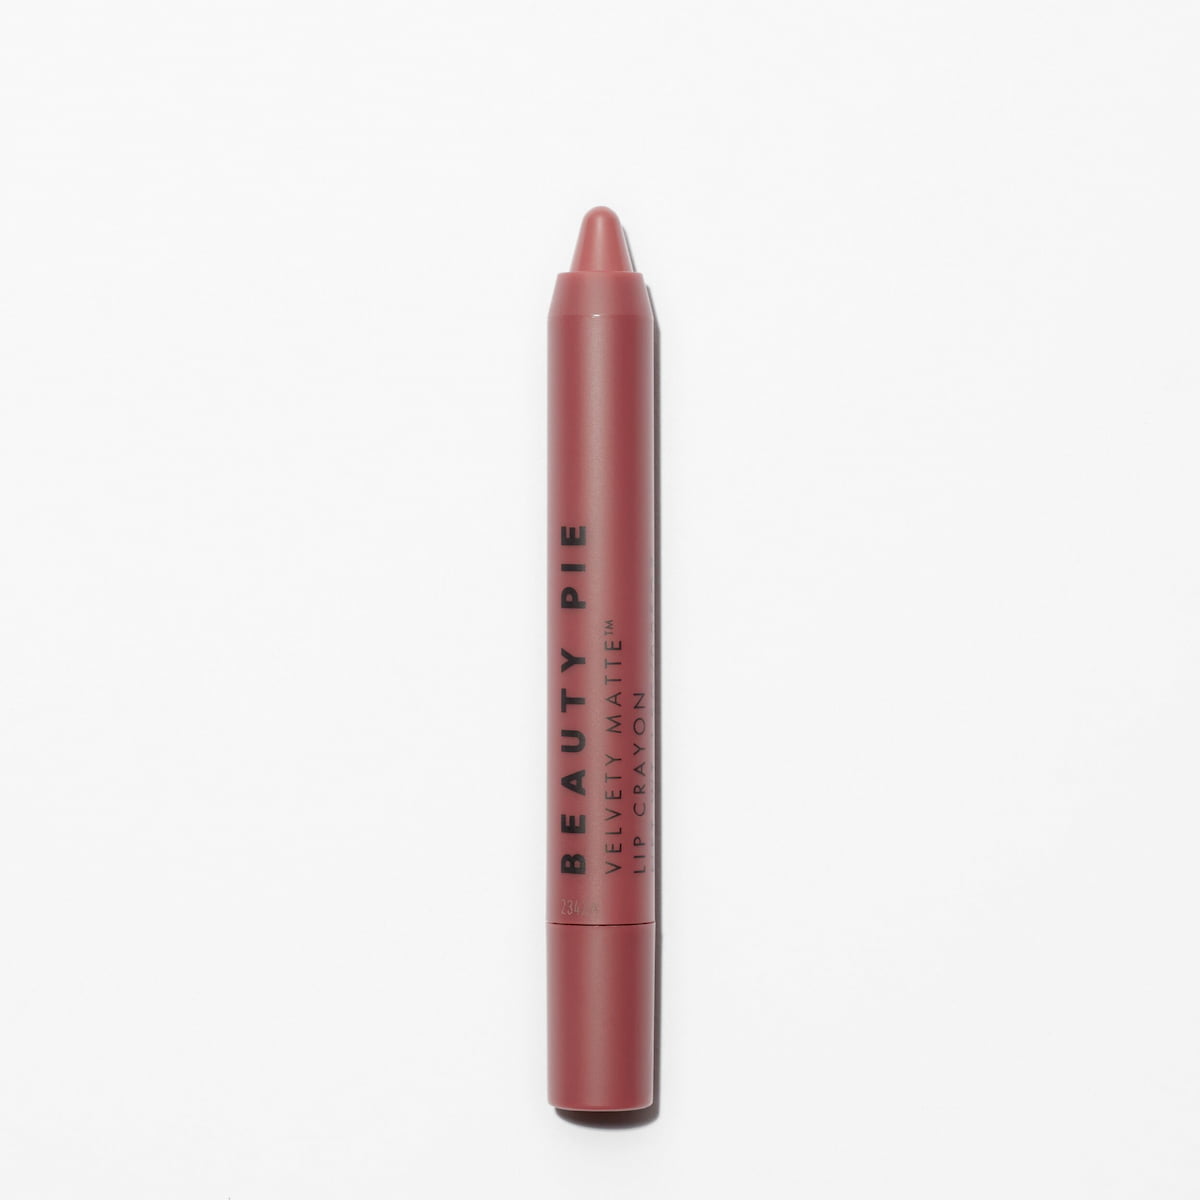 Beauty Pie + Matte Lip Crayon in Pep Talk Pink